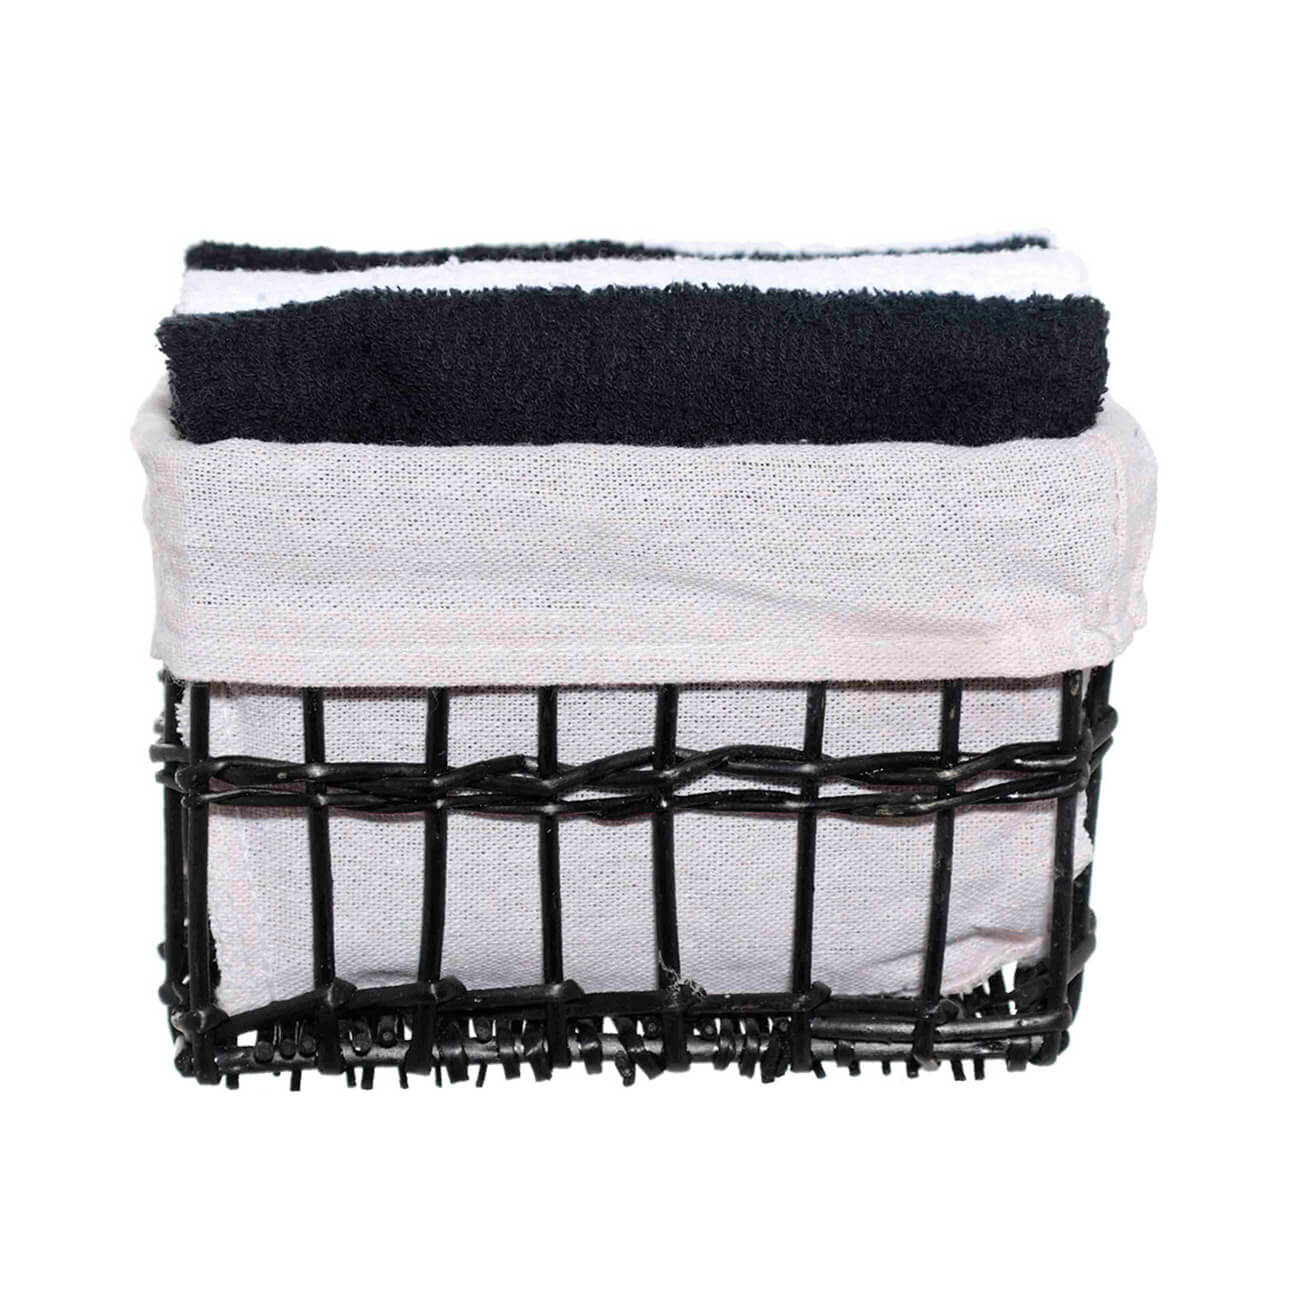 Полотенце, 30х30 см, 4 шт, в корзине, хлопок/лоза, черное/белое, Basket towel полотенце 30х30 см 5 шт в корзине хлопок лоза бежевое белое бахрома basket towel